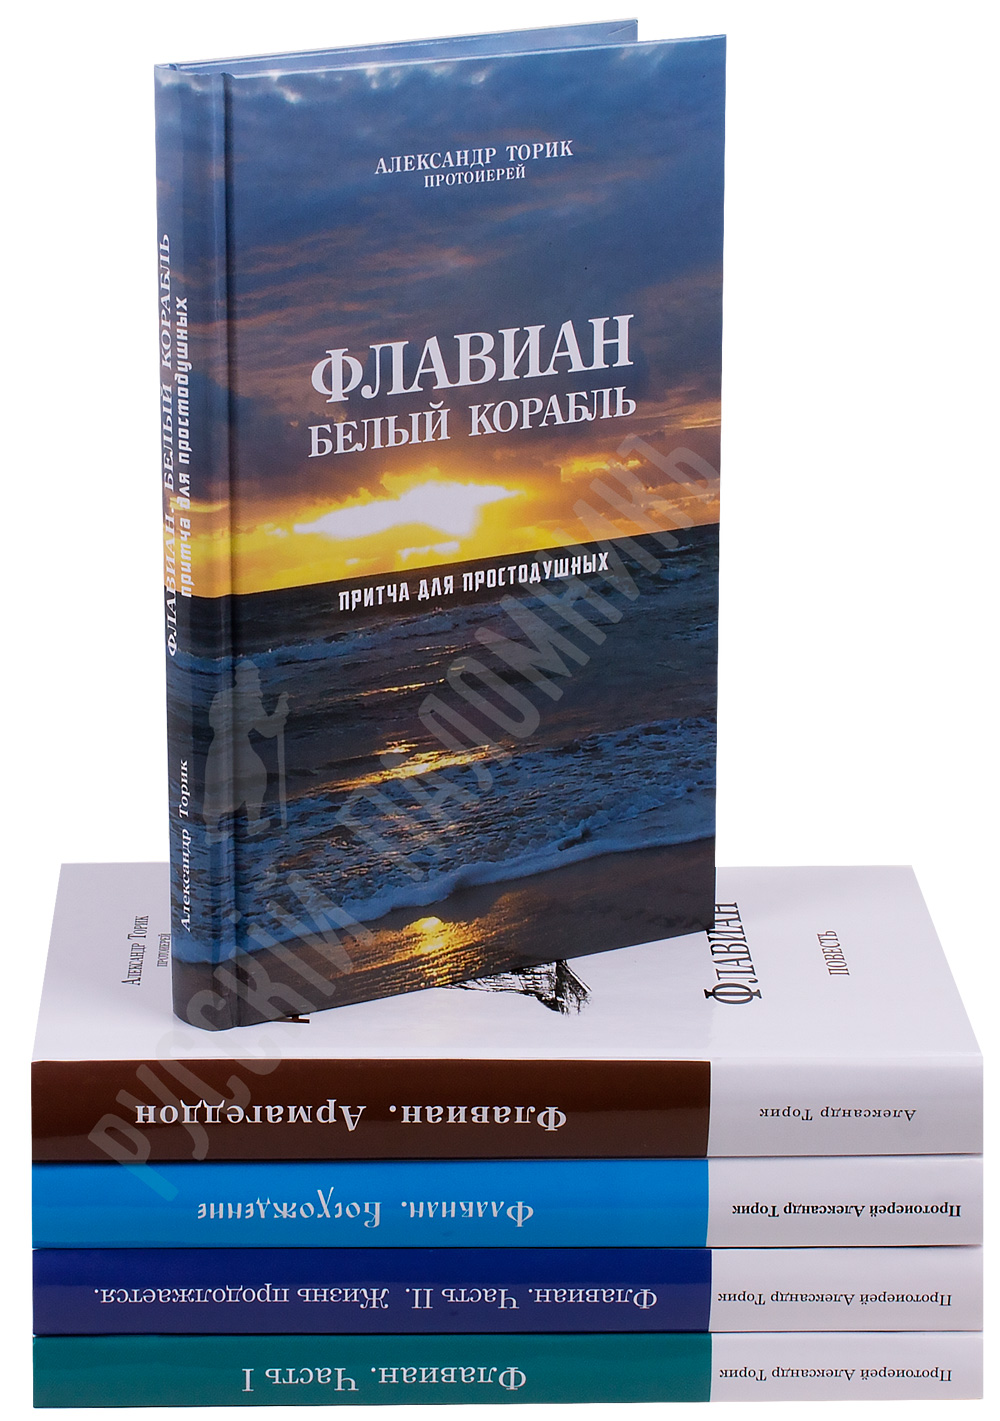 Православные книги флавиан скачать бесплатно